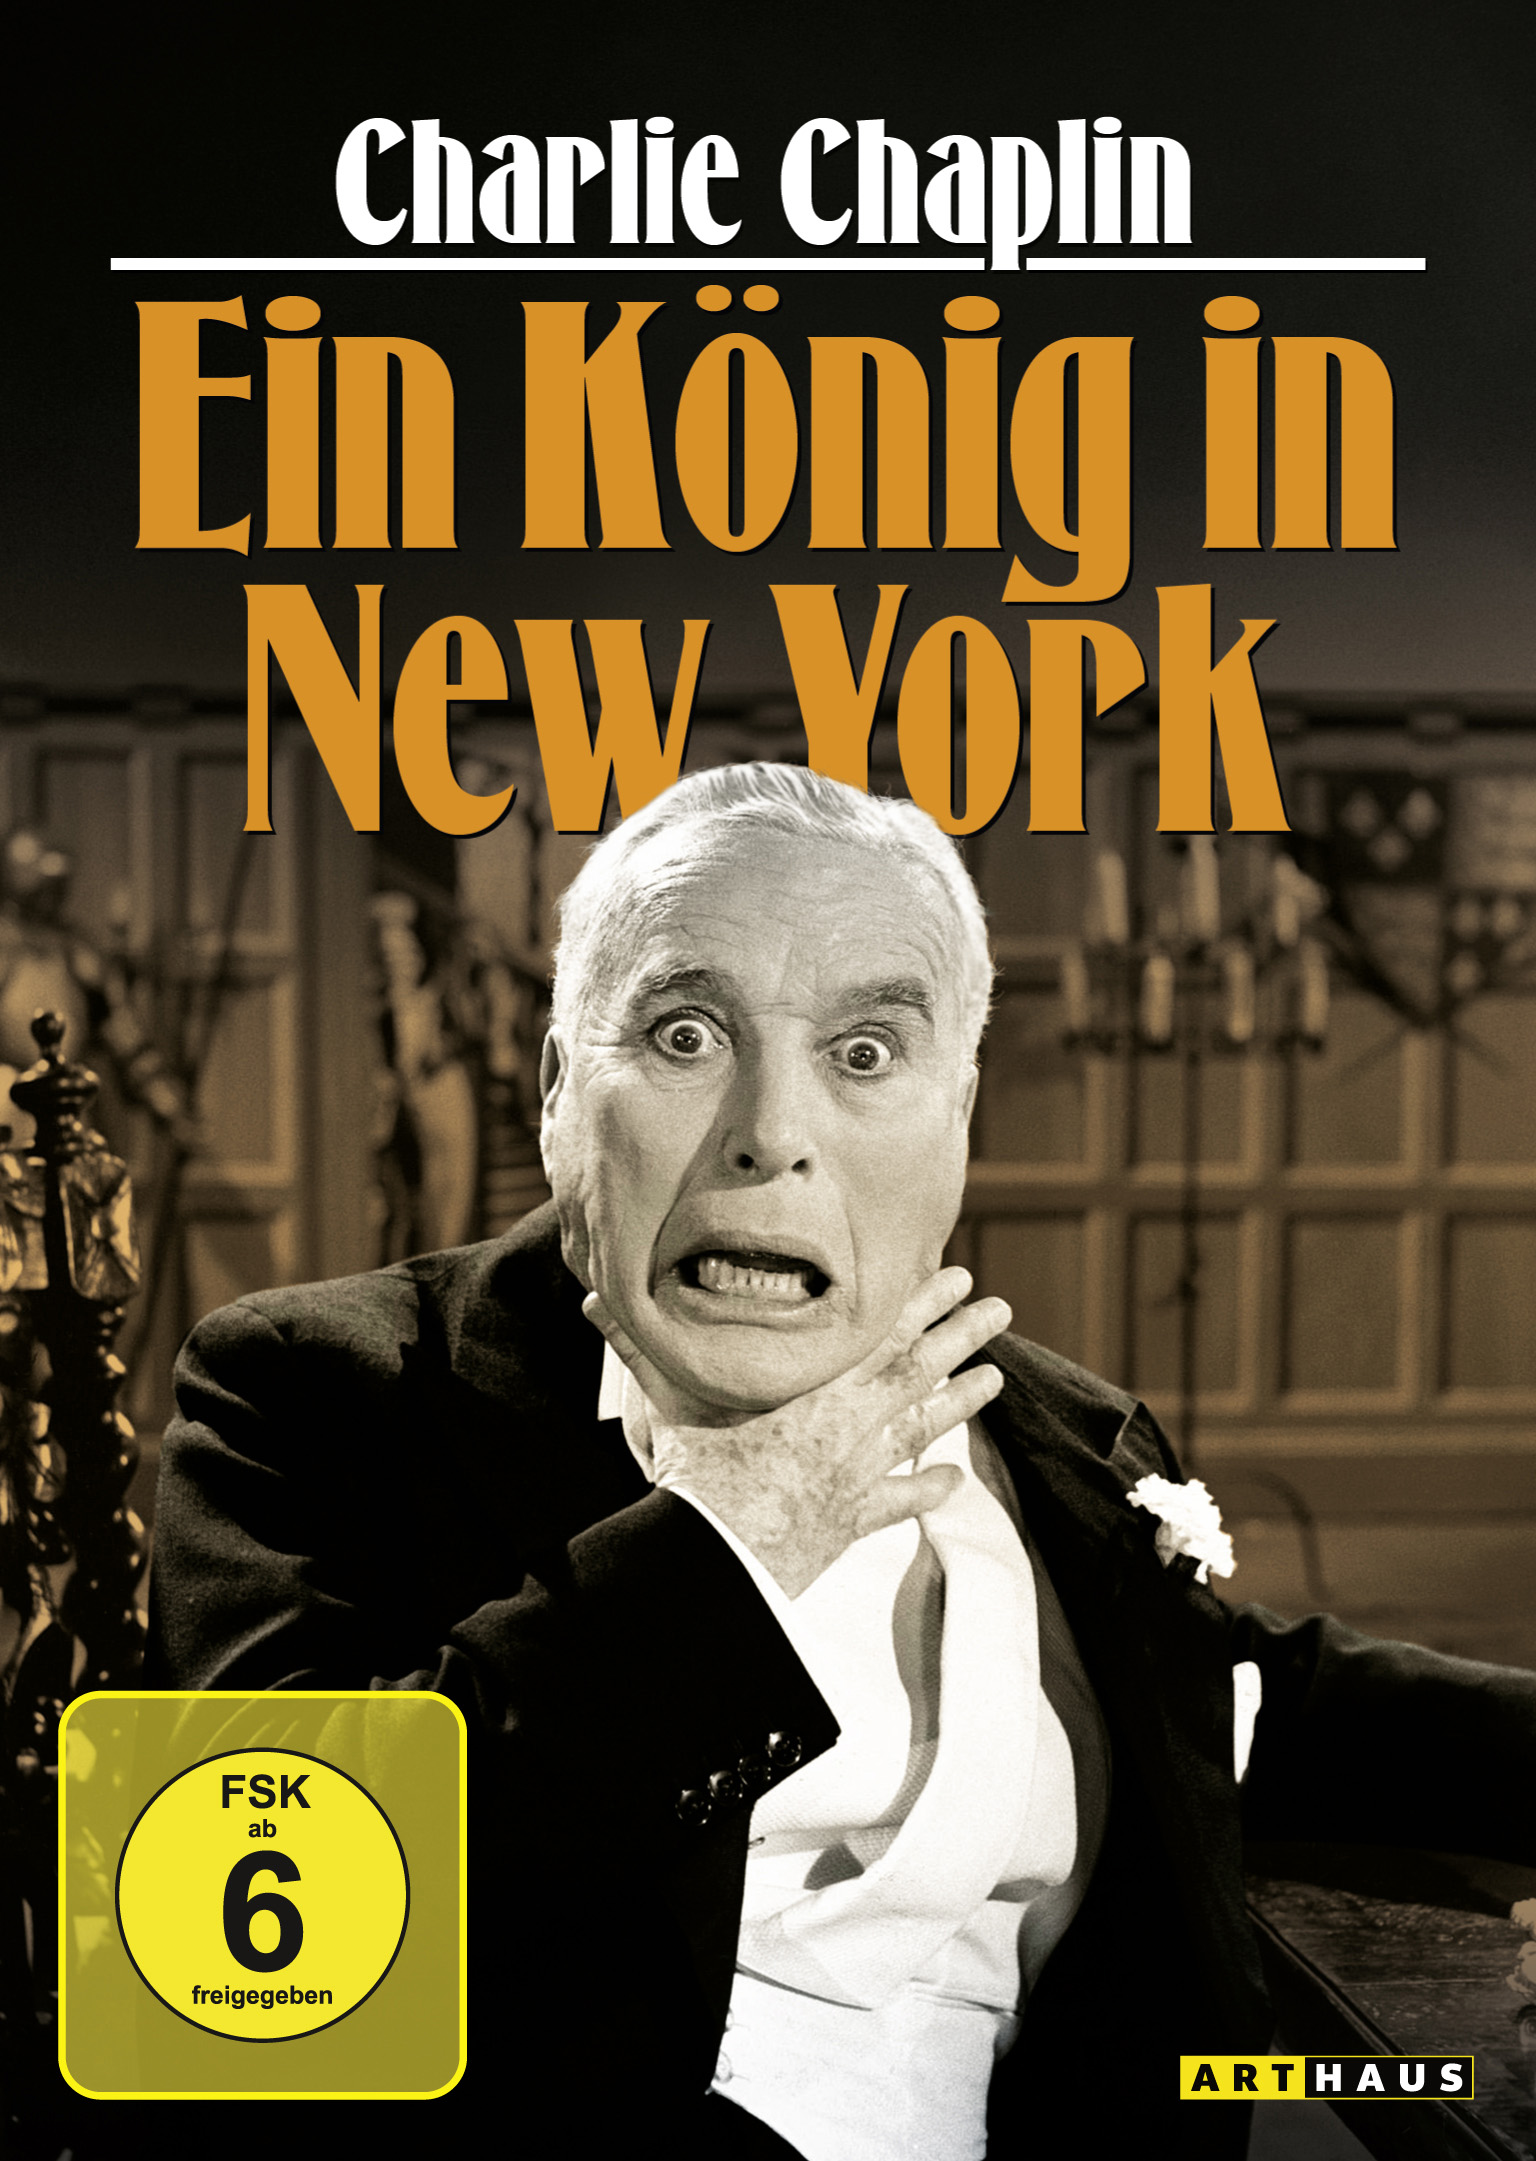 New Chaplin York - in Ein König Charlie DVD